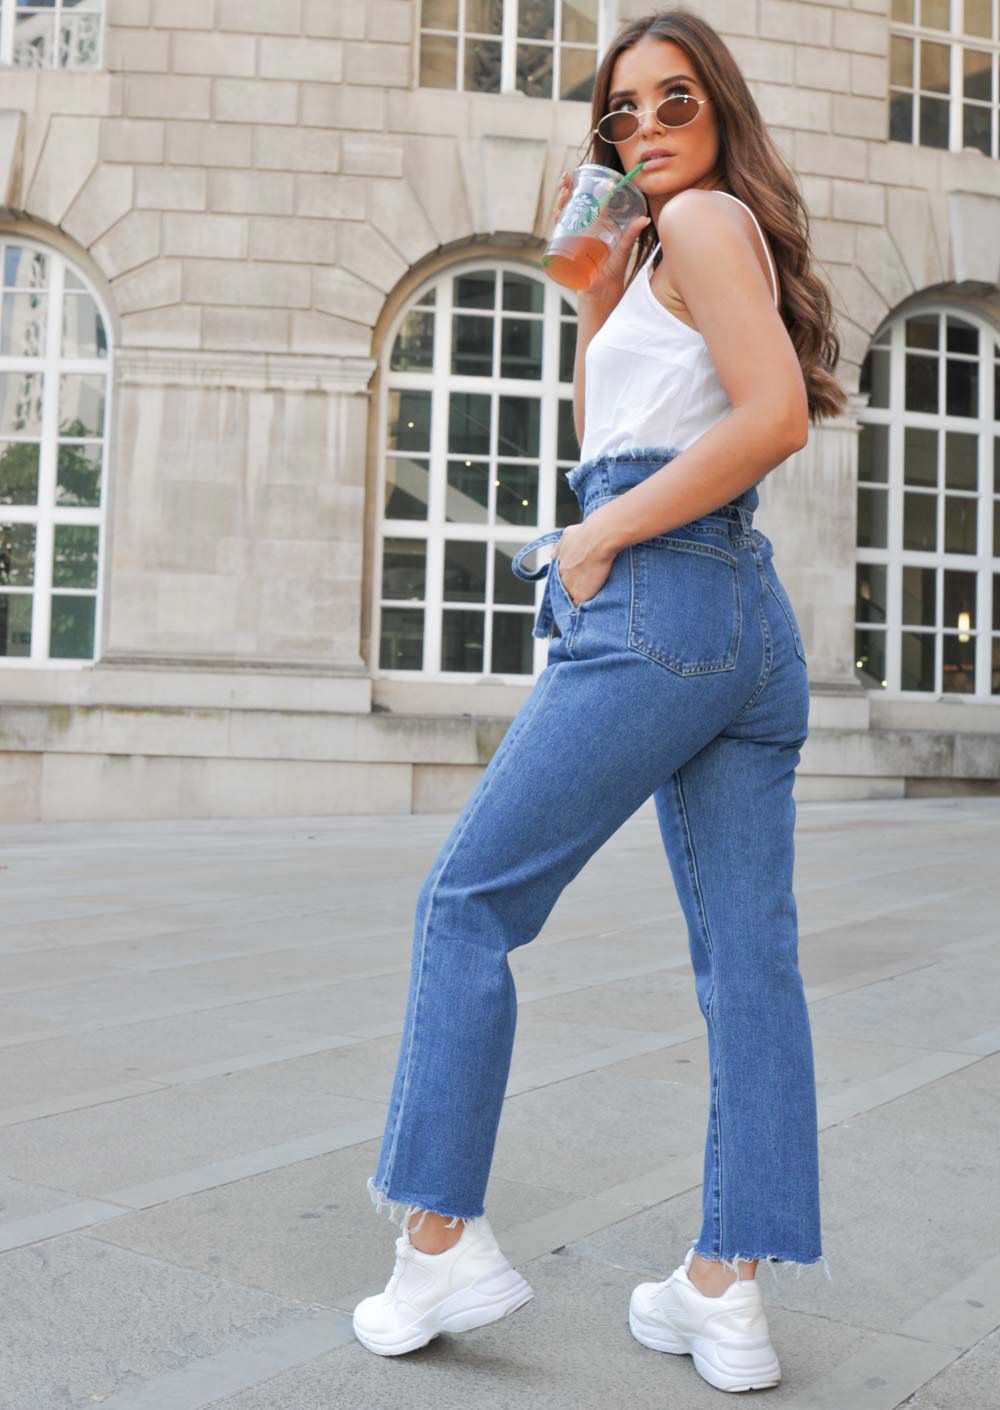 2018 Moda Denim Jeans Para La Mujer Pantalones De Cintura Alta Cremallera Casual Pantalones Vaqueros De Las Señoras Con Los Marcos Boyfriend De € | DHgate